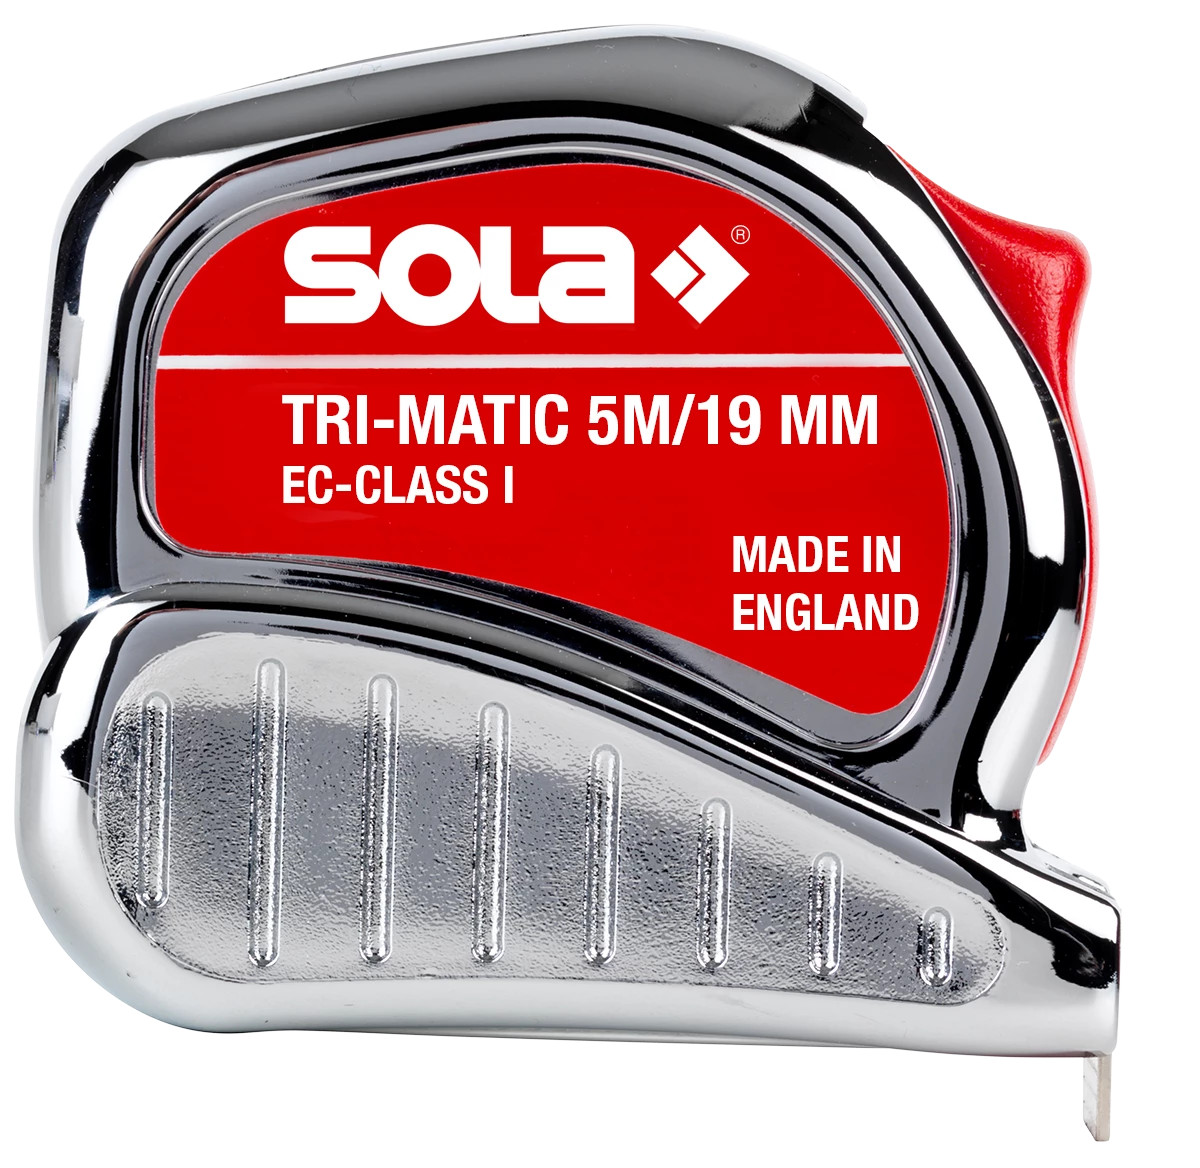 Ruletă Tri-Matic TM, 5m – Sola-50023301 criano.com